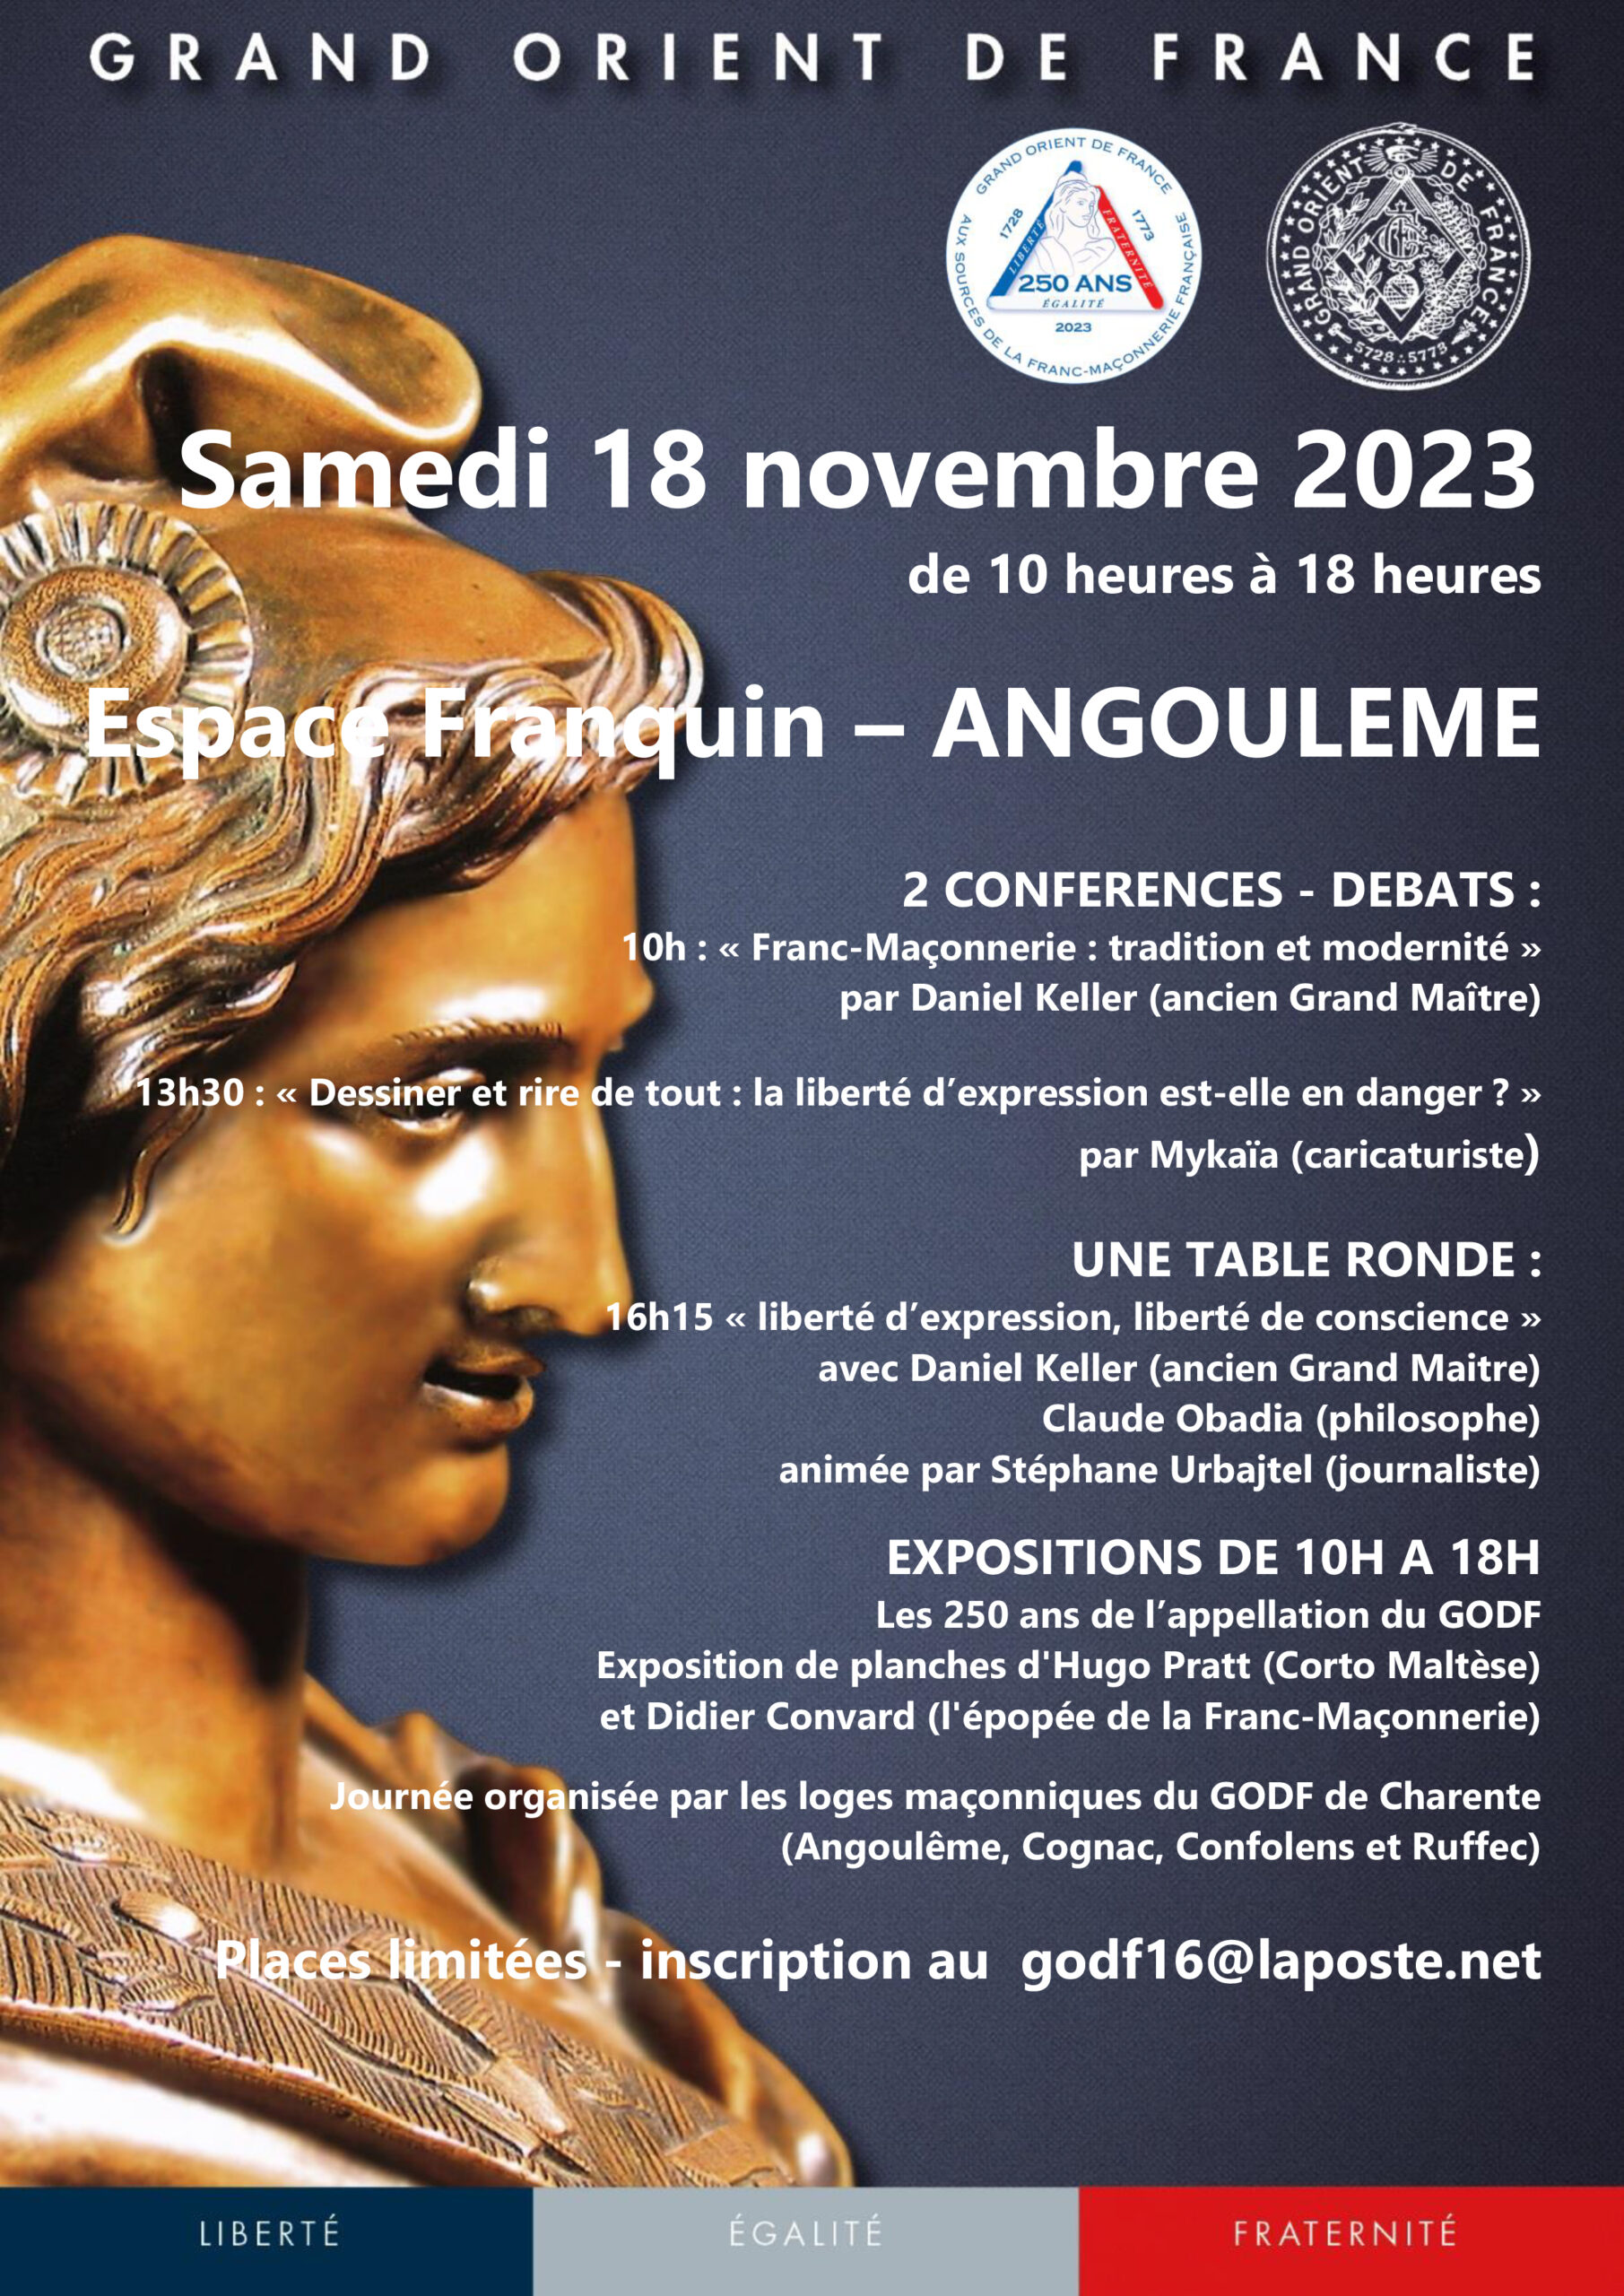 250 ans de l'appellation GODF à Angoulême